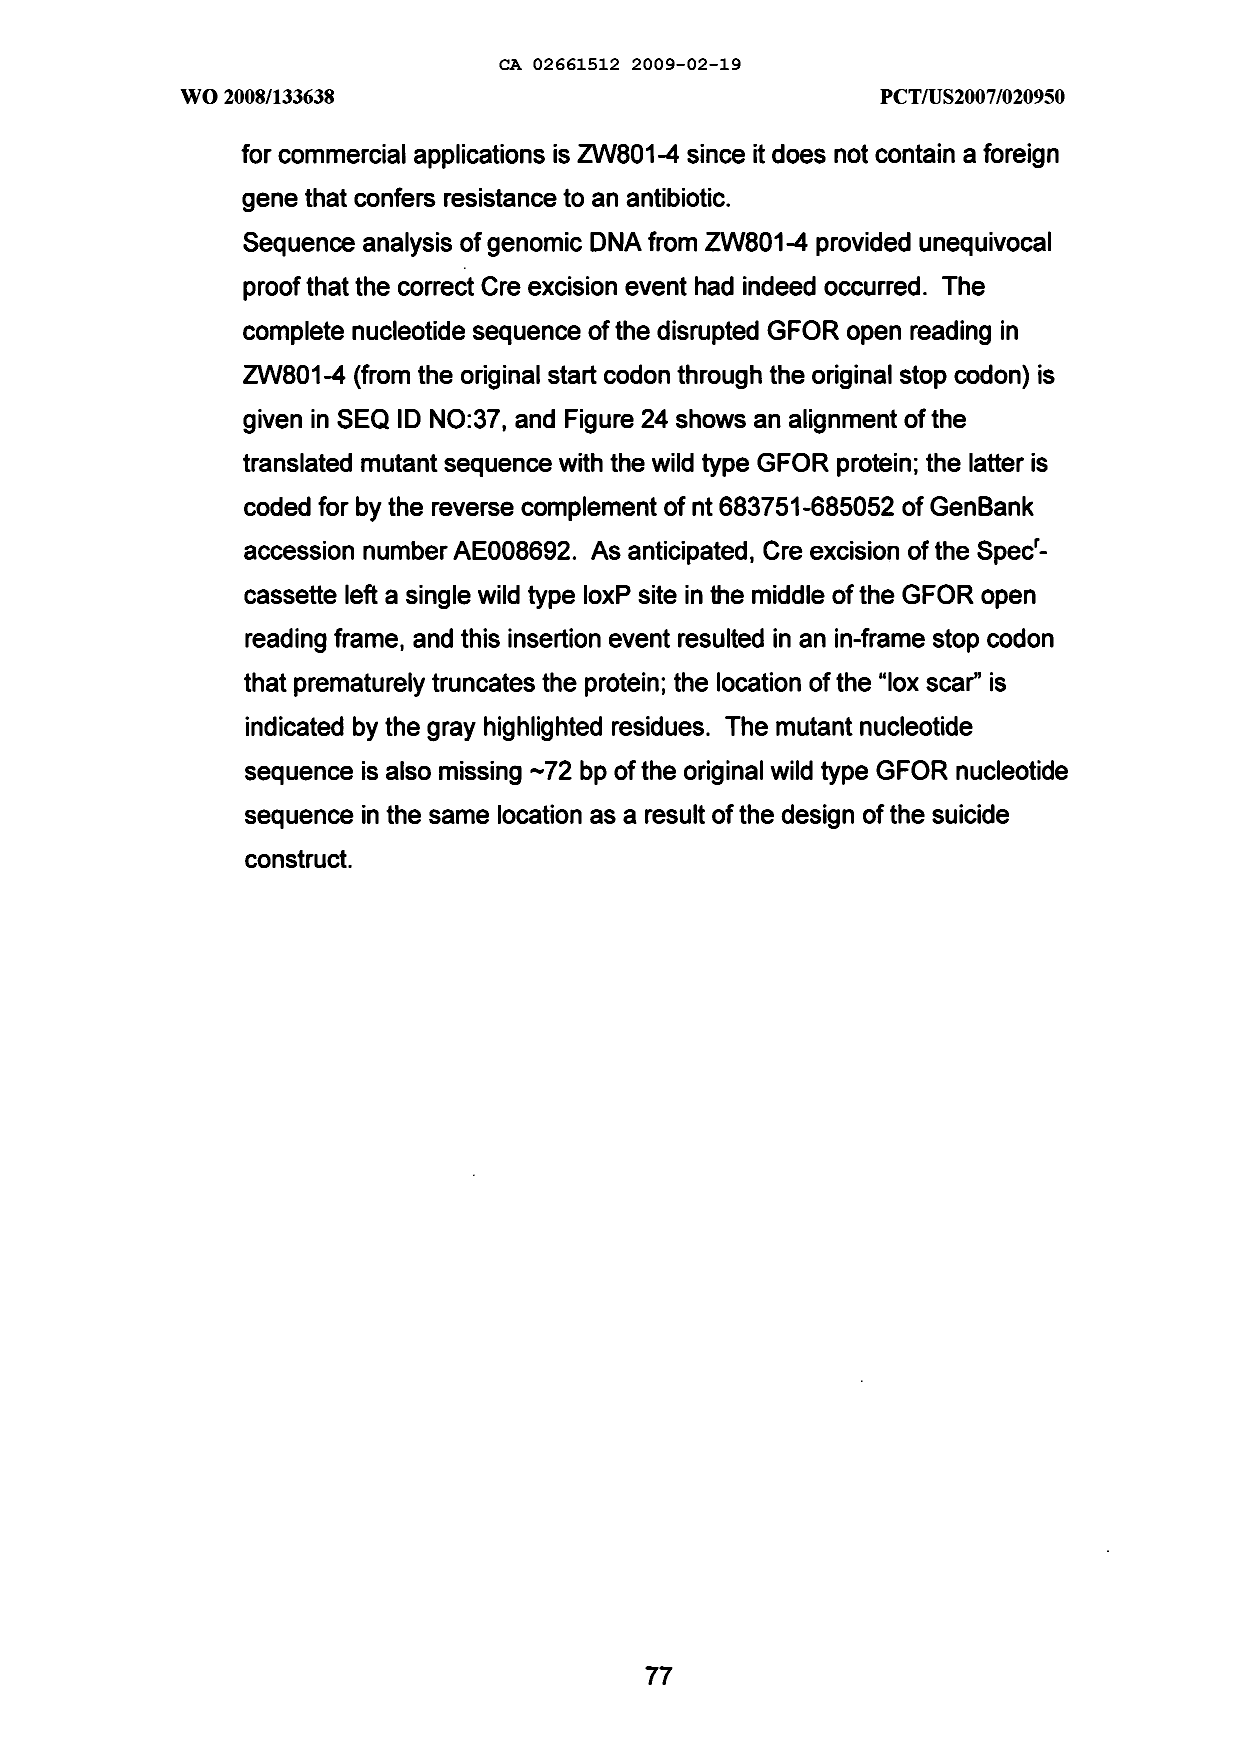 Canadian Patent Document 2661512. Description 20081219. Image 77 of 77